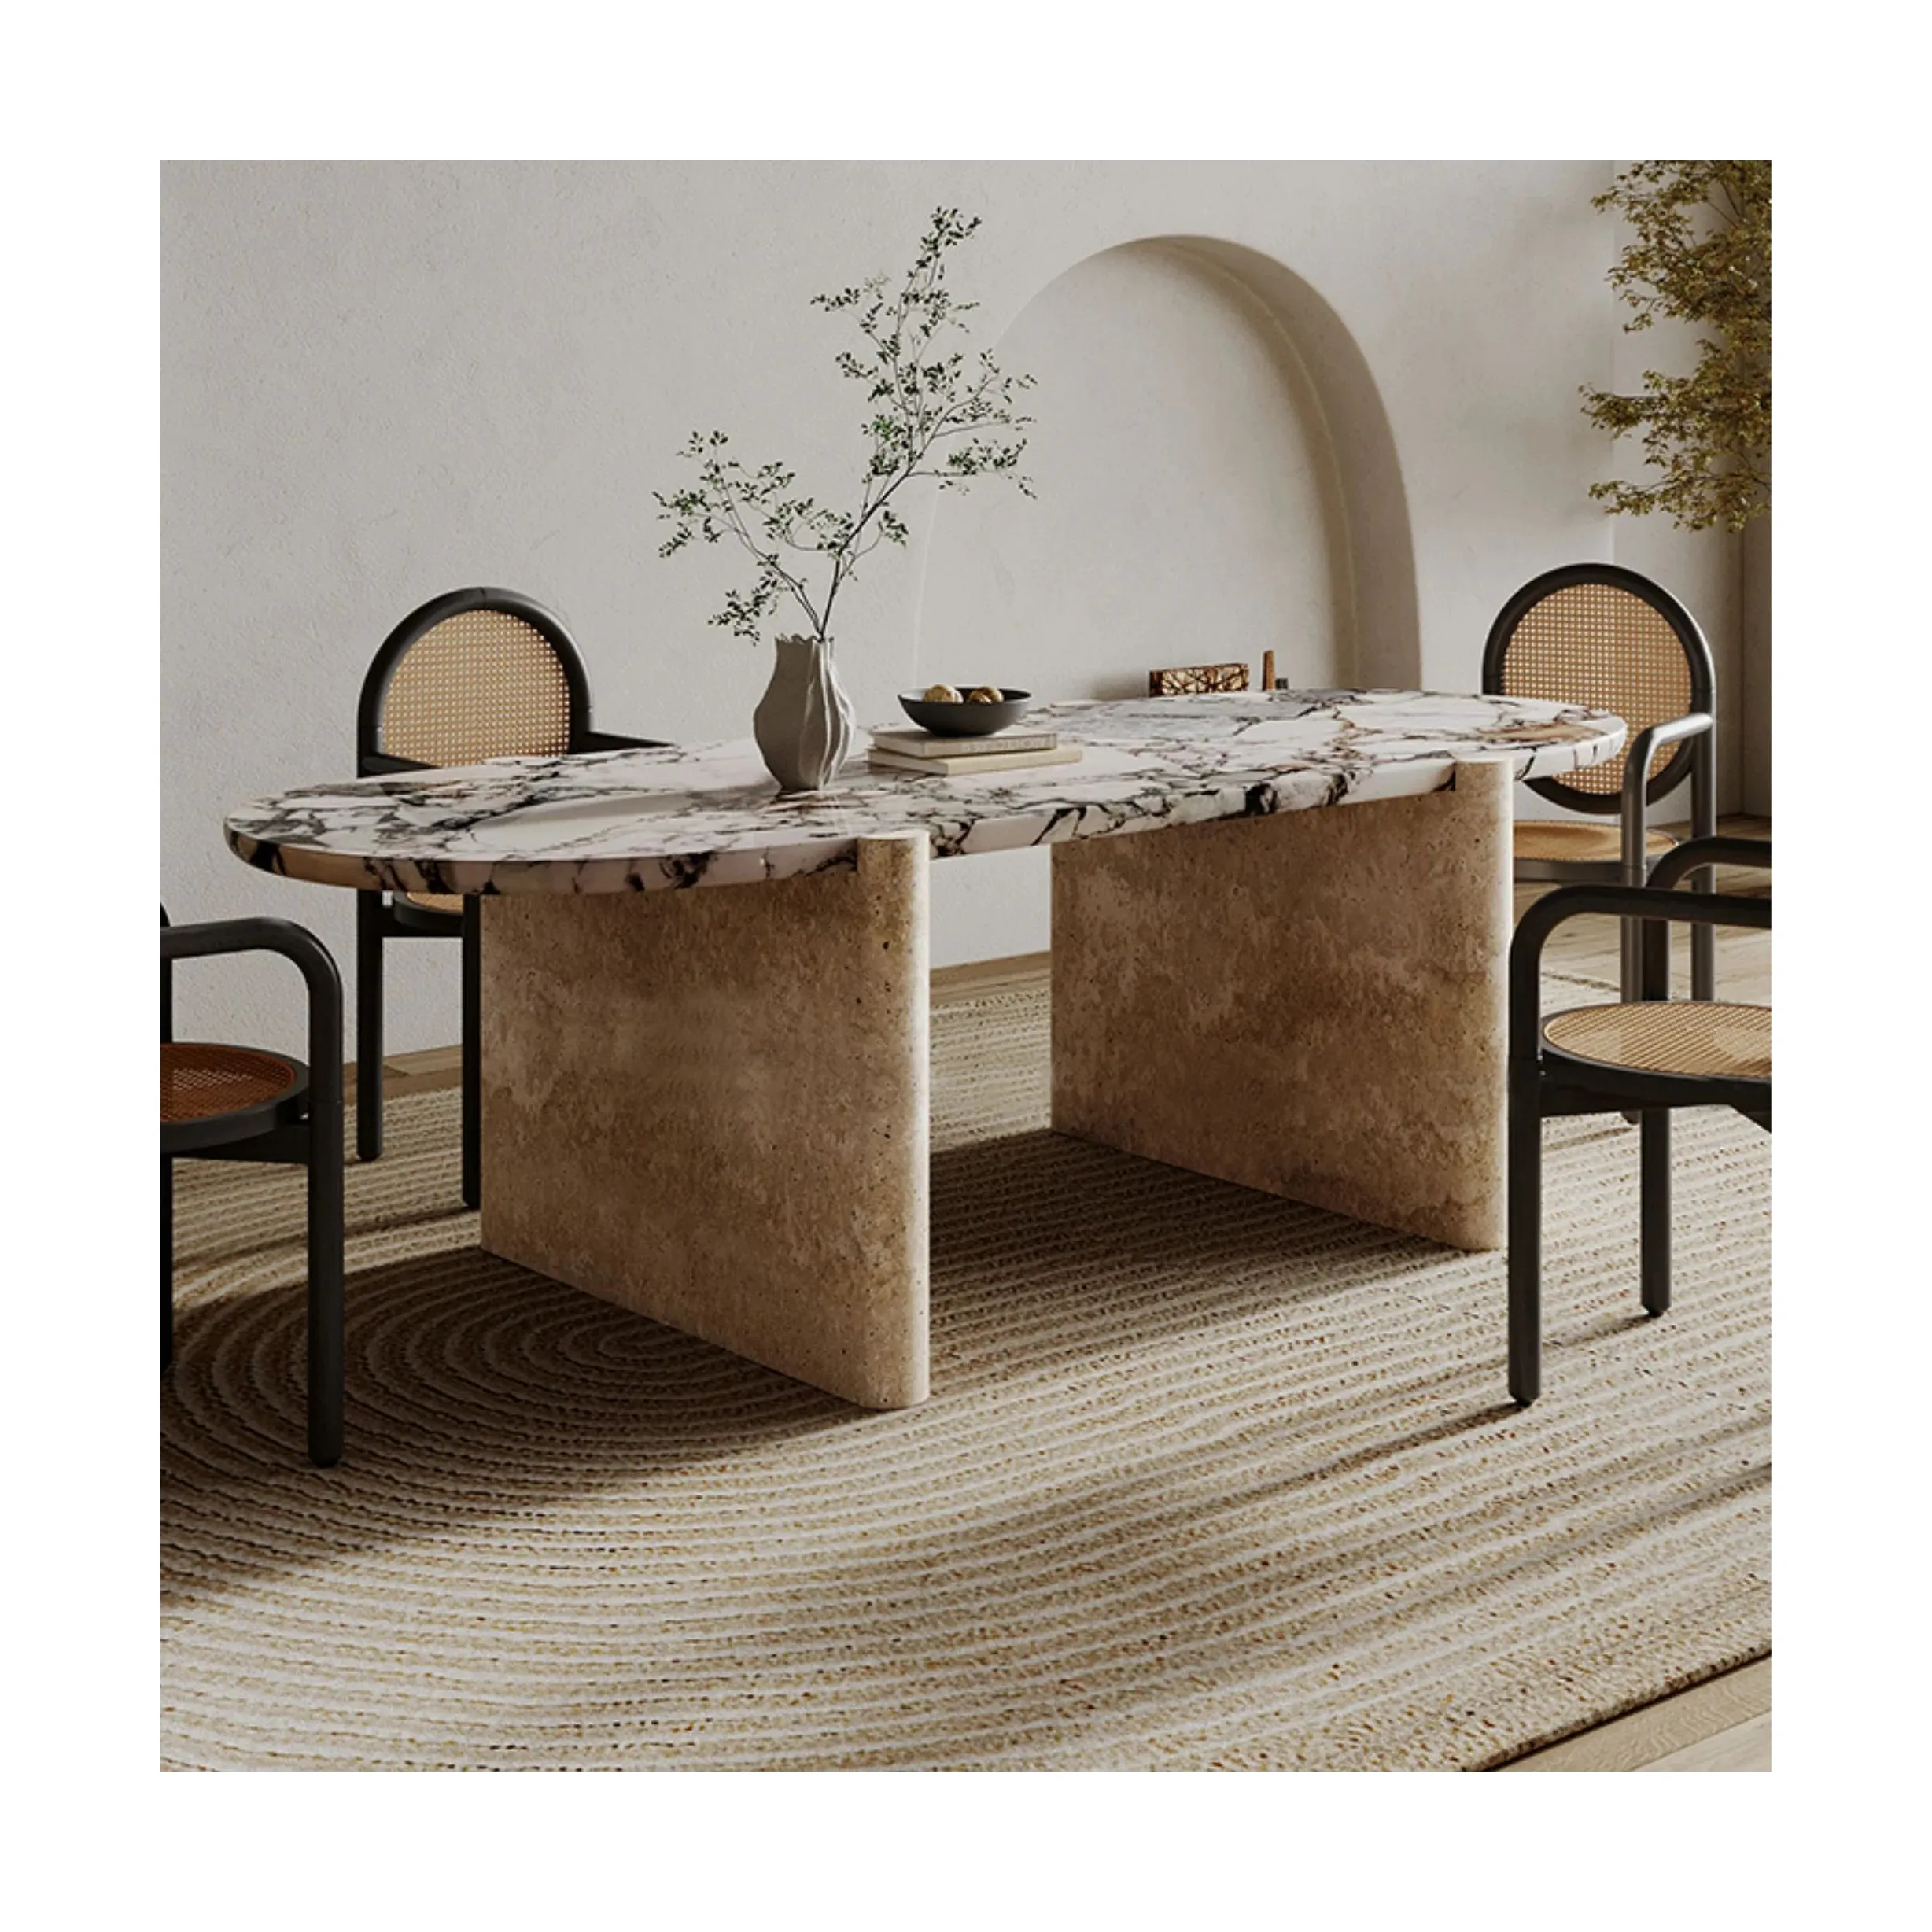 SHIHUI özelleştirilmiş lüks yemek odası mobilyası Modern doğal Oval mermer traverten yemek masası 6 koltuklu